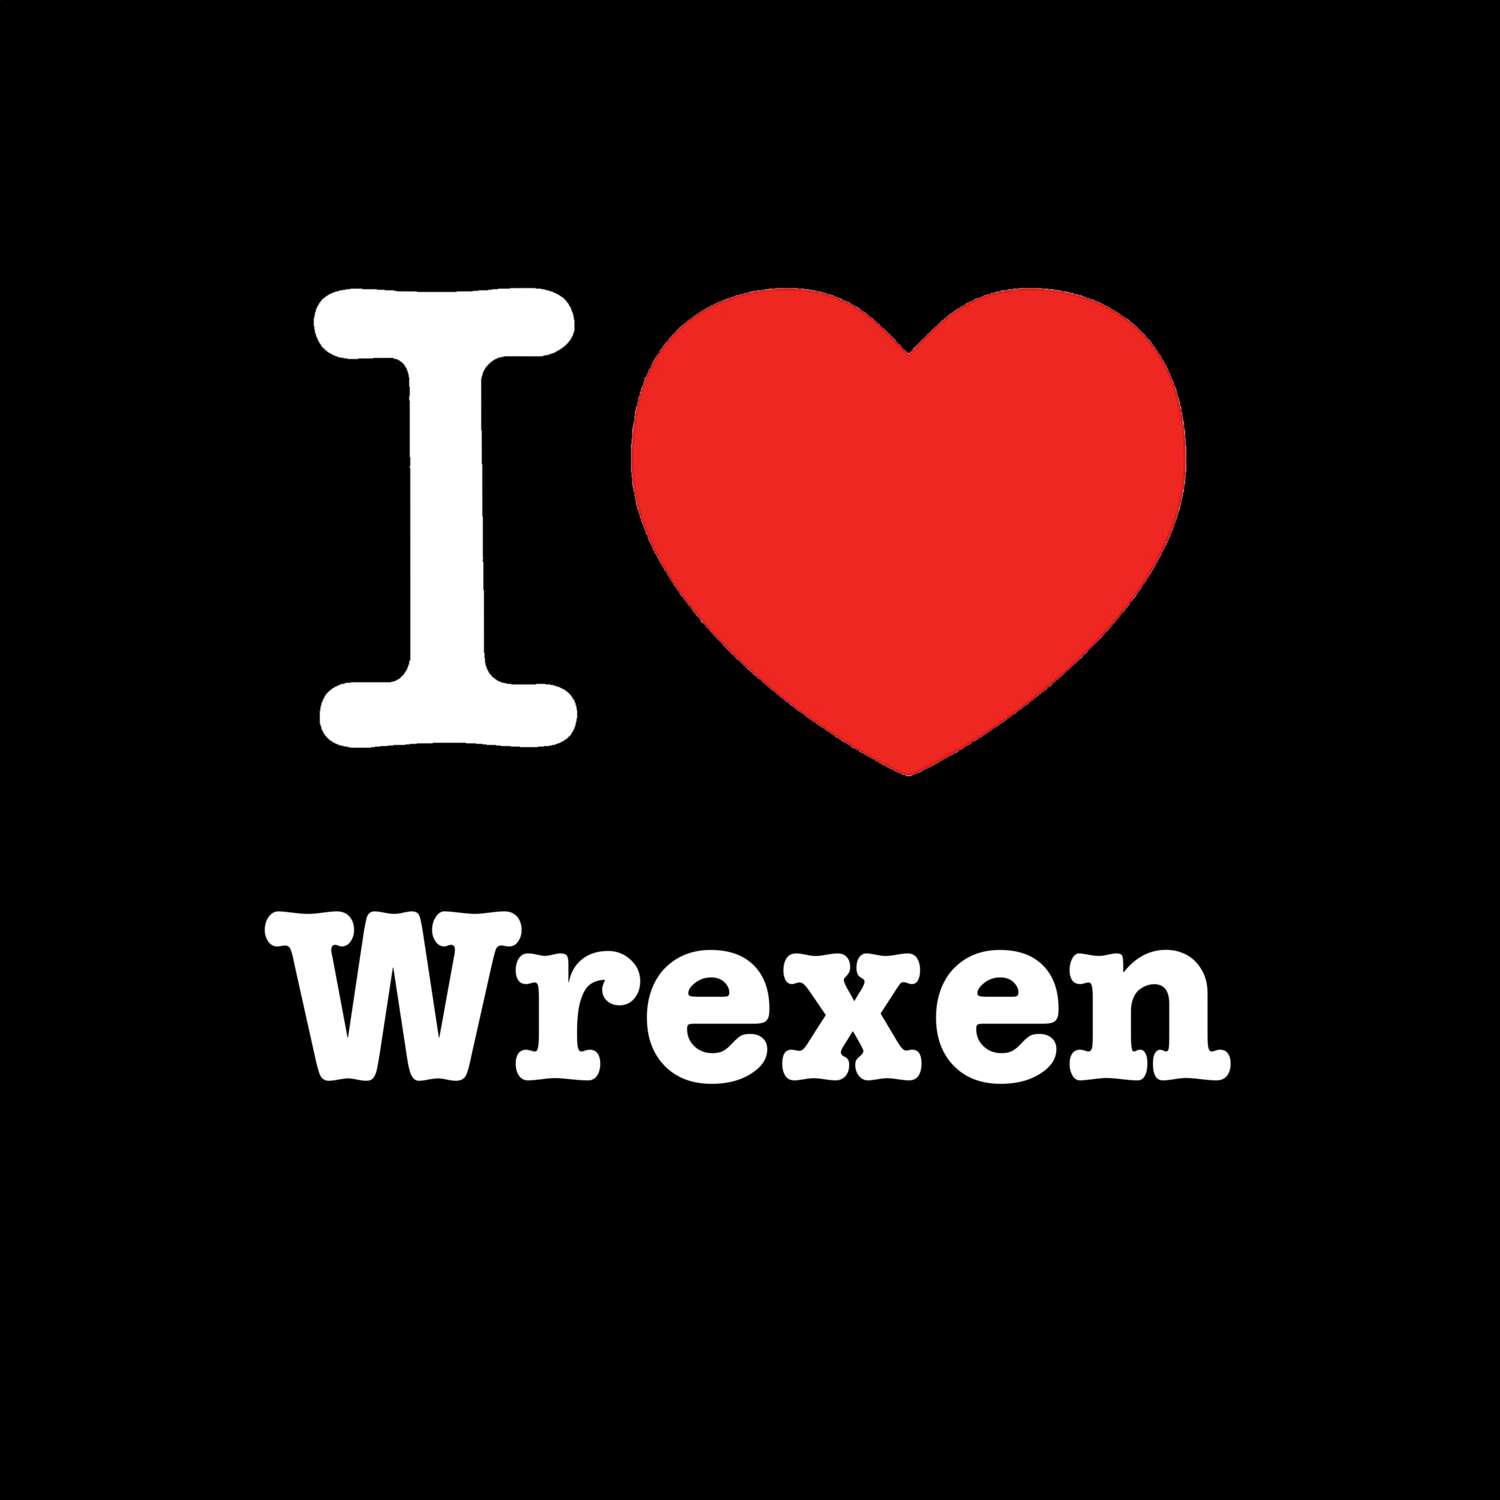 Wrexen T-Shirt »I love«